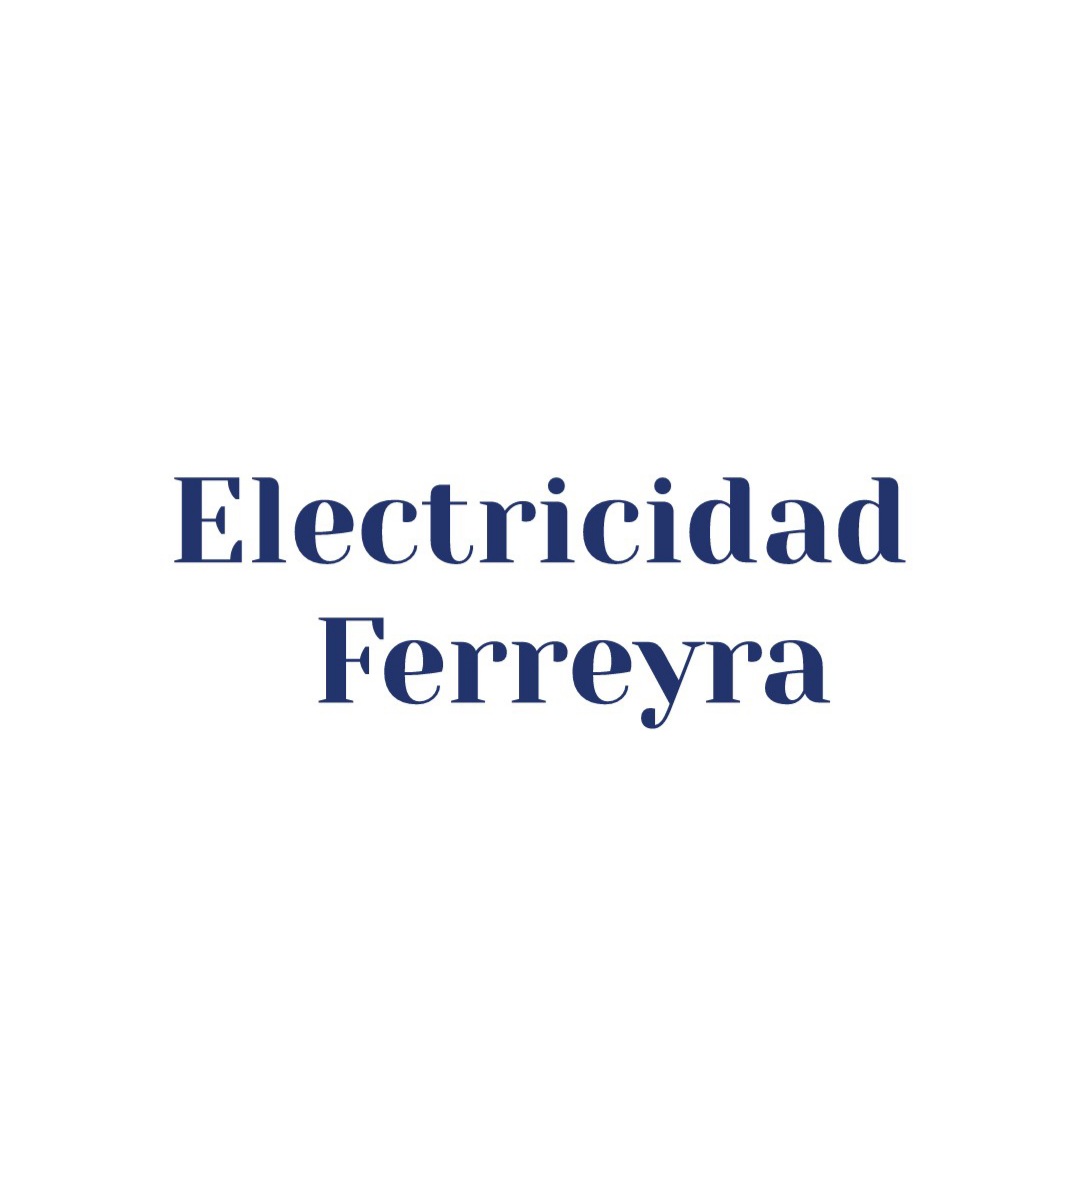 Electricidad Ferreyra